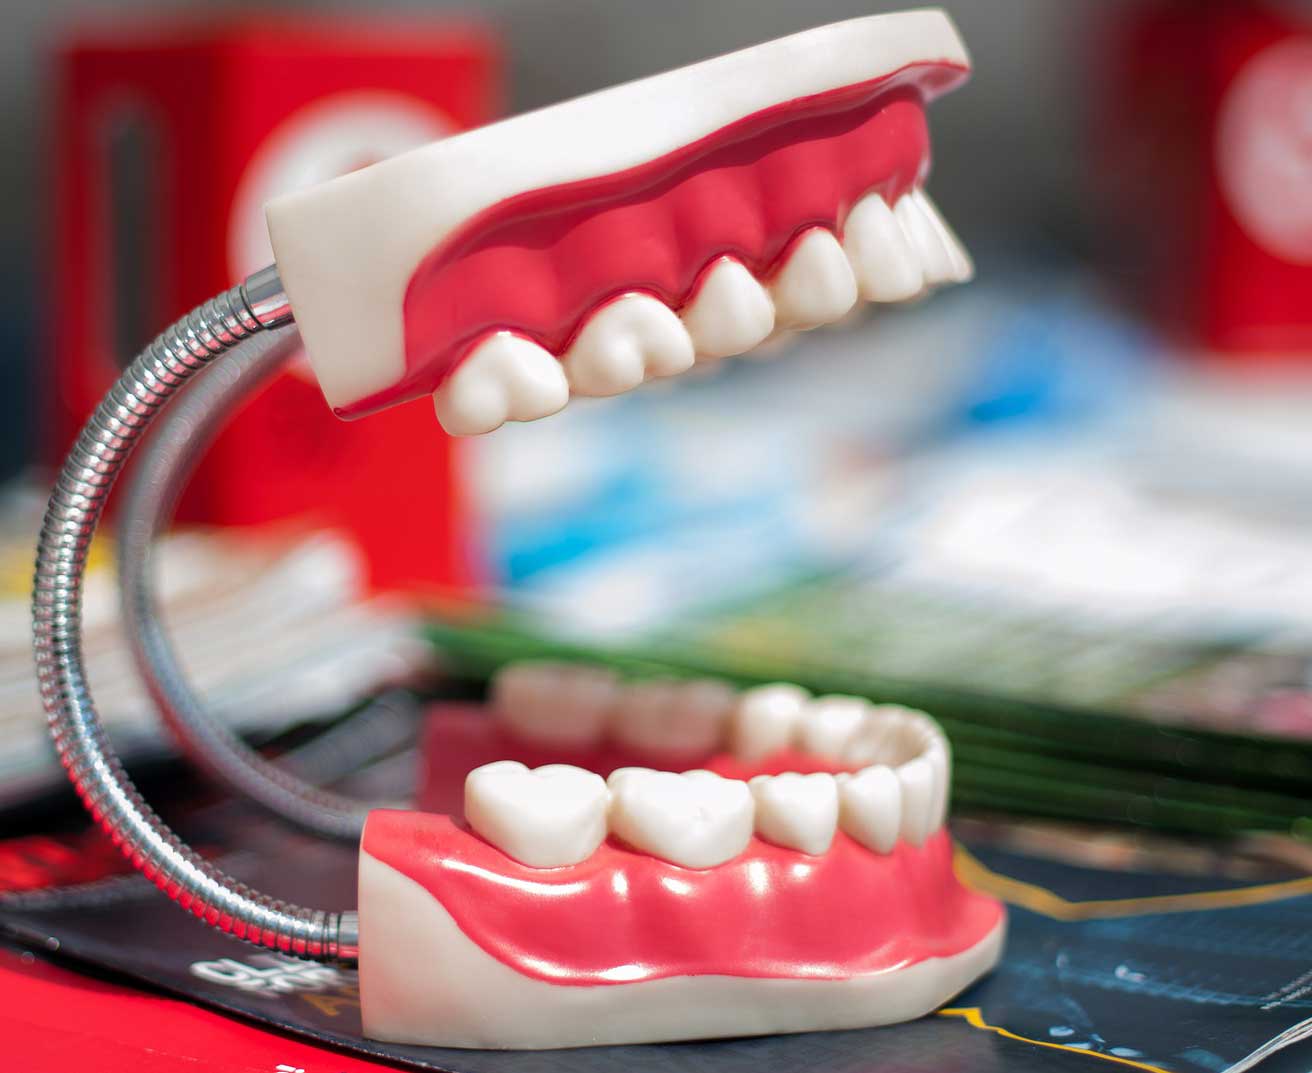 Don't buy fake teeth veneers! Only trust reputable companies like Brighter Image Lab